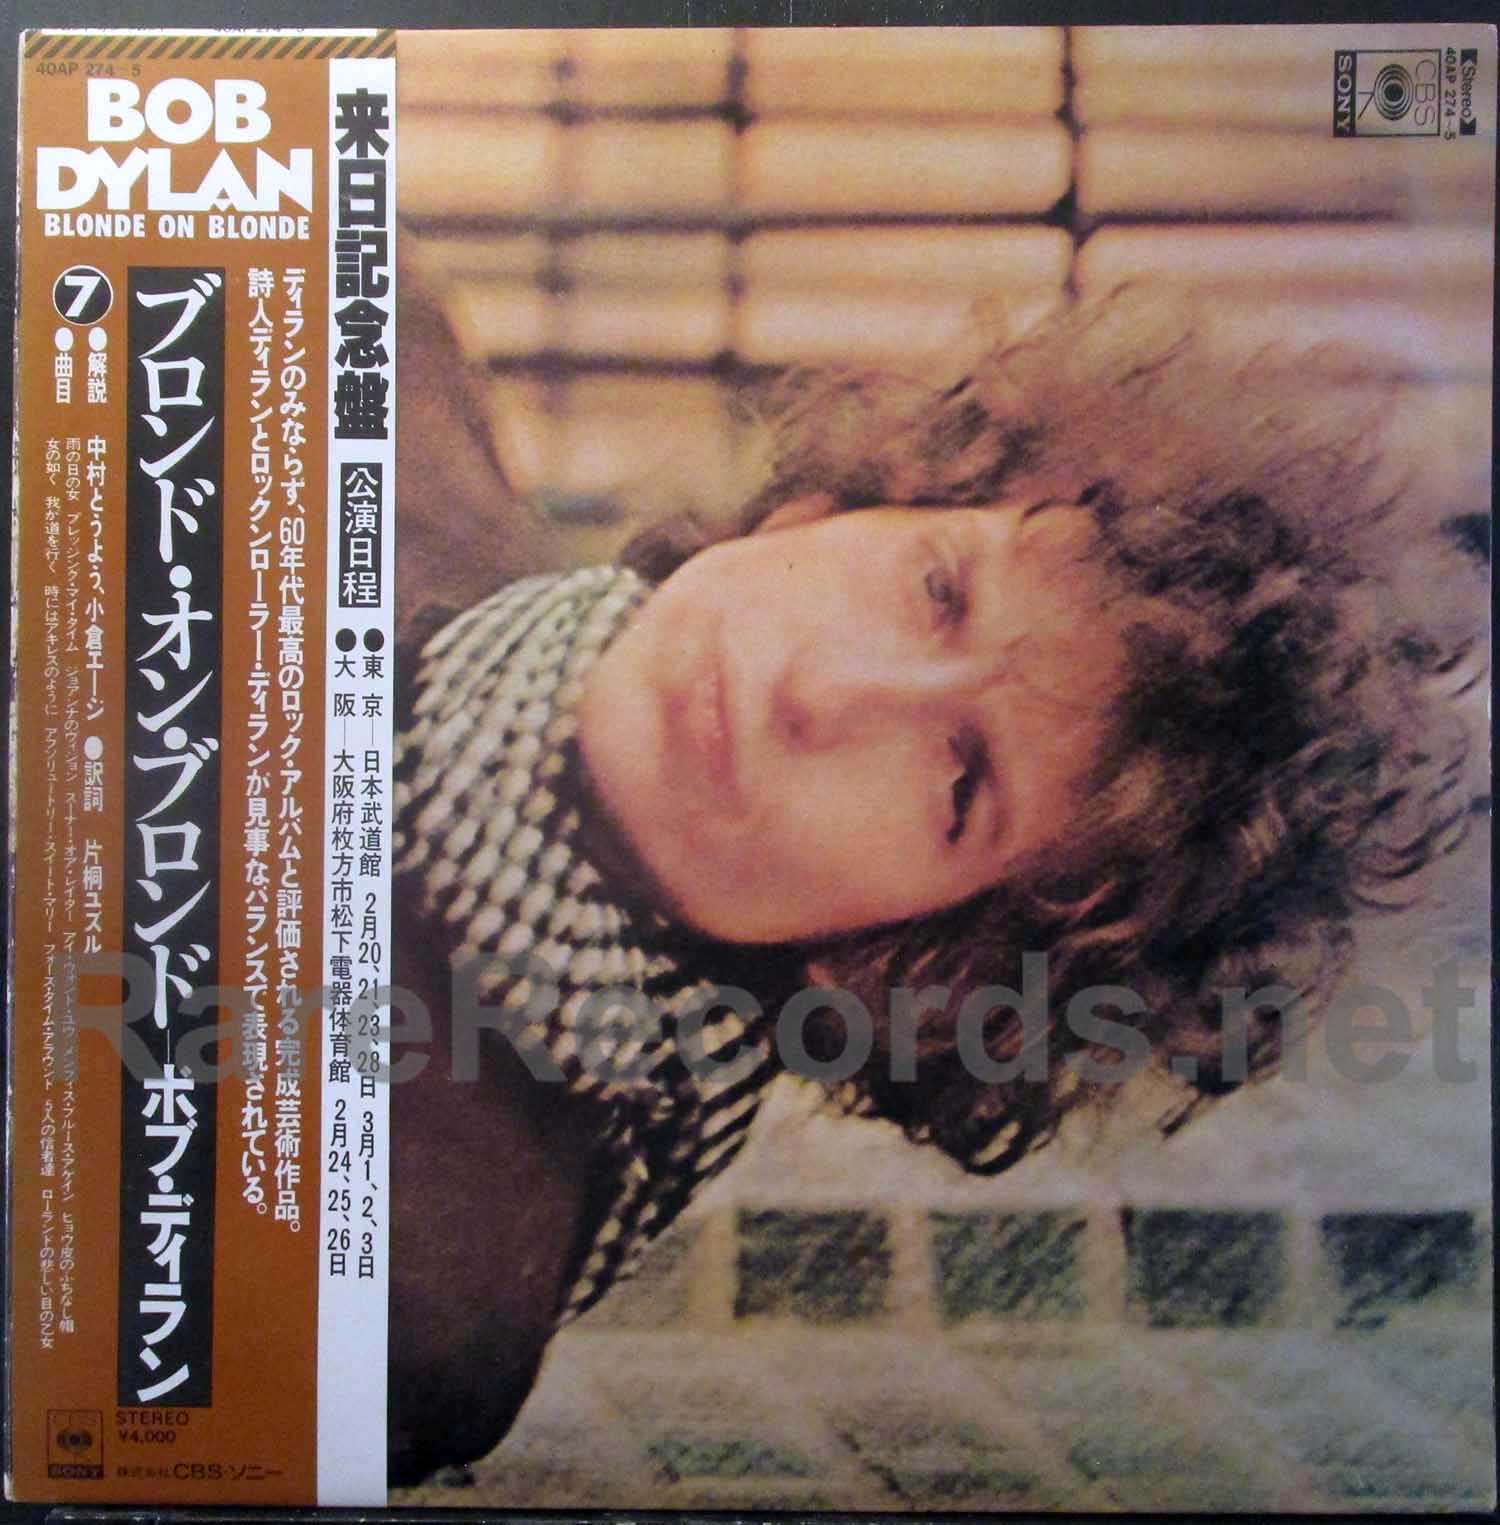 Bob Dylan - Blonde on Blonde Japan 2 LP set with obi